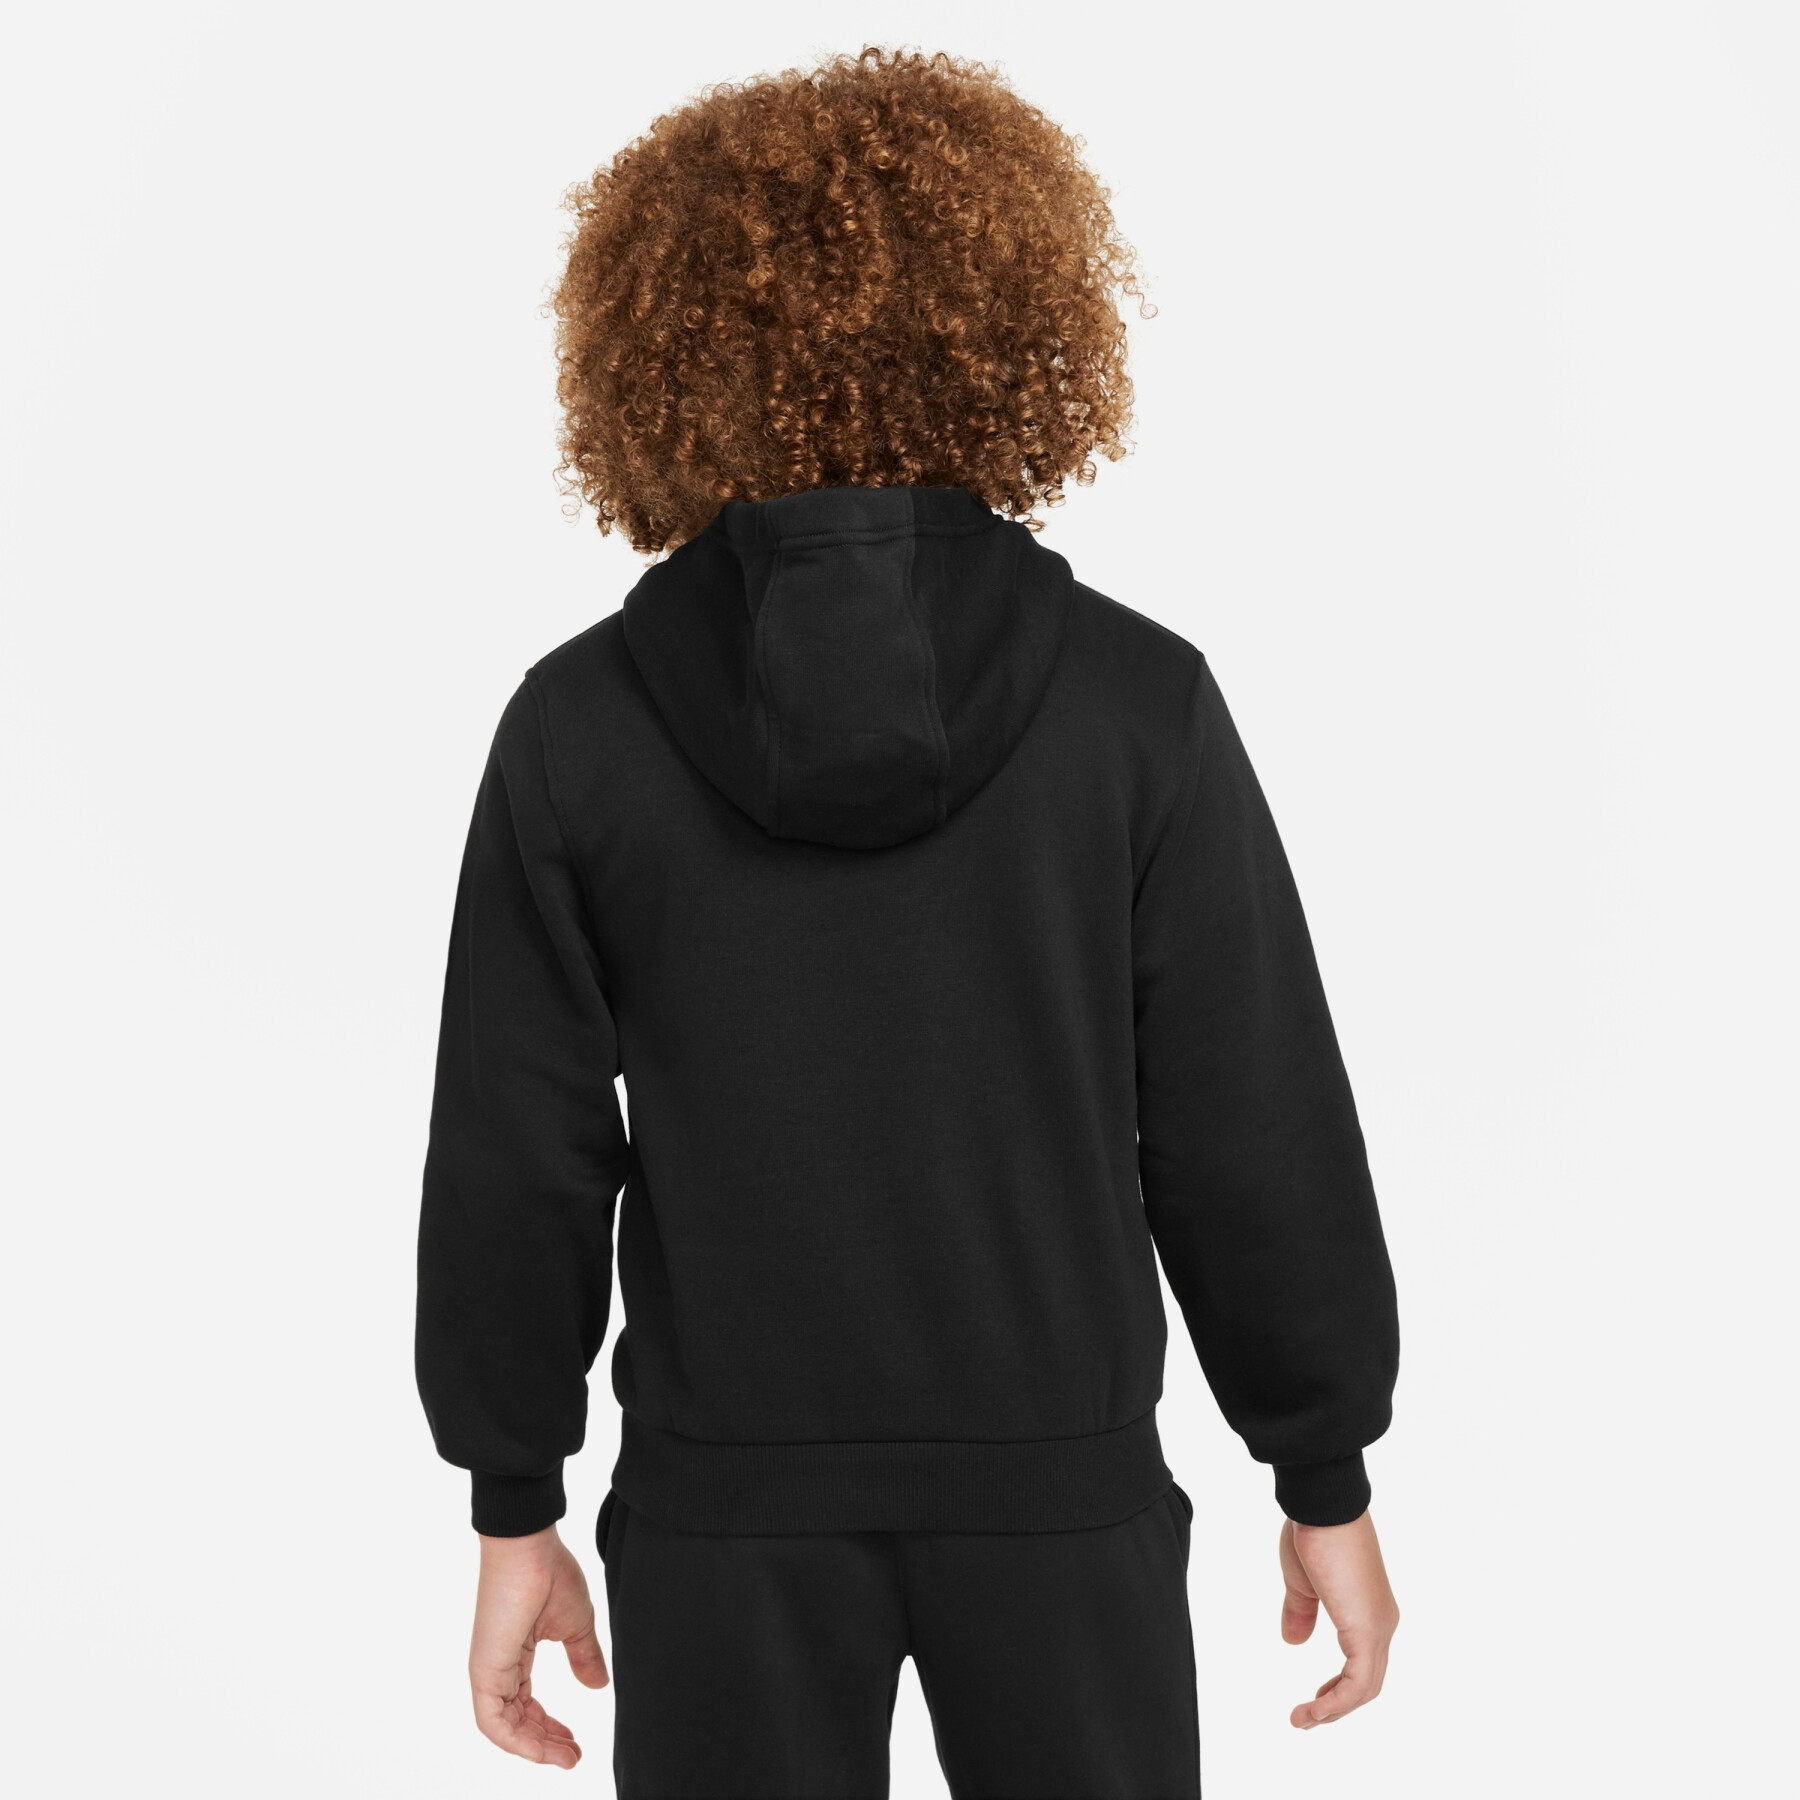 Sweatshirt à capuche enfant Nike Academy Player Edition:CR7 Club